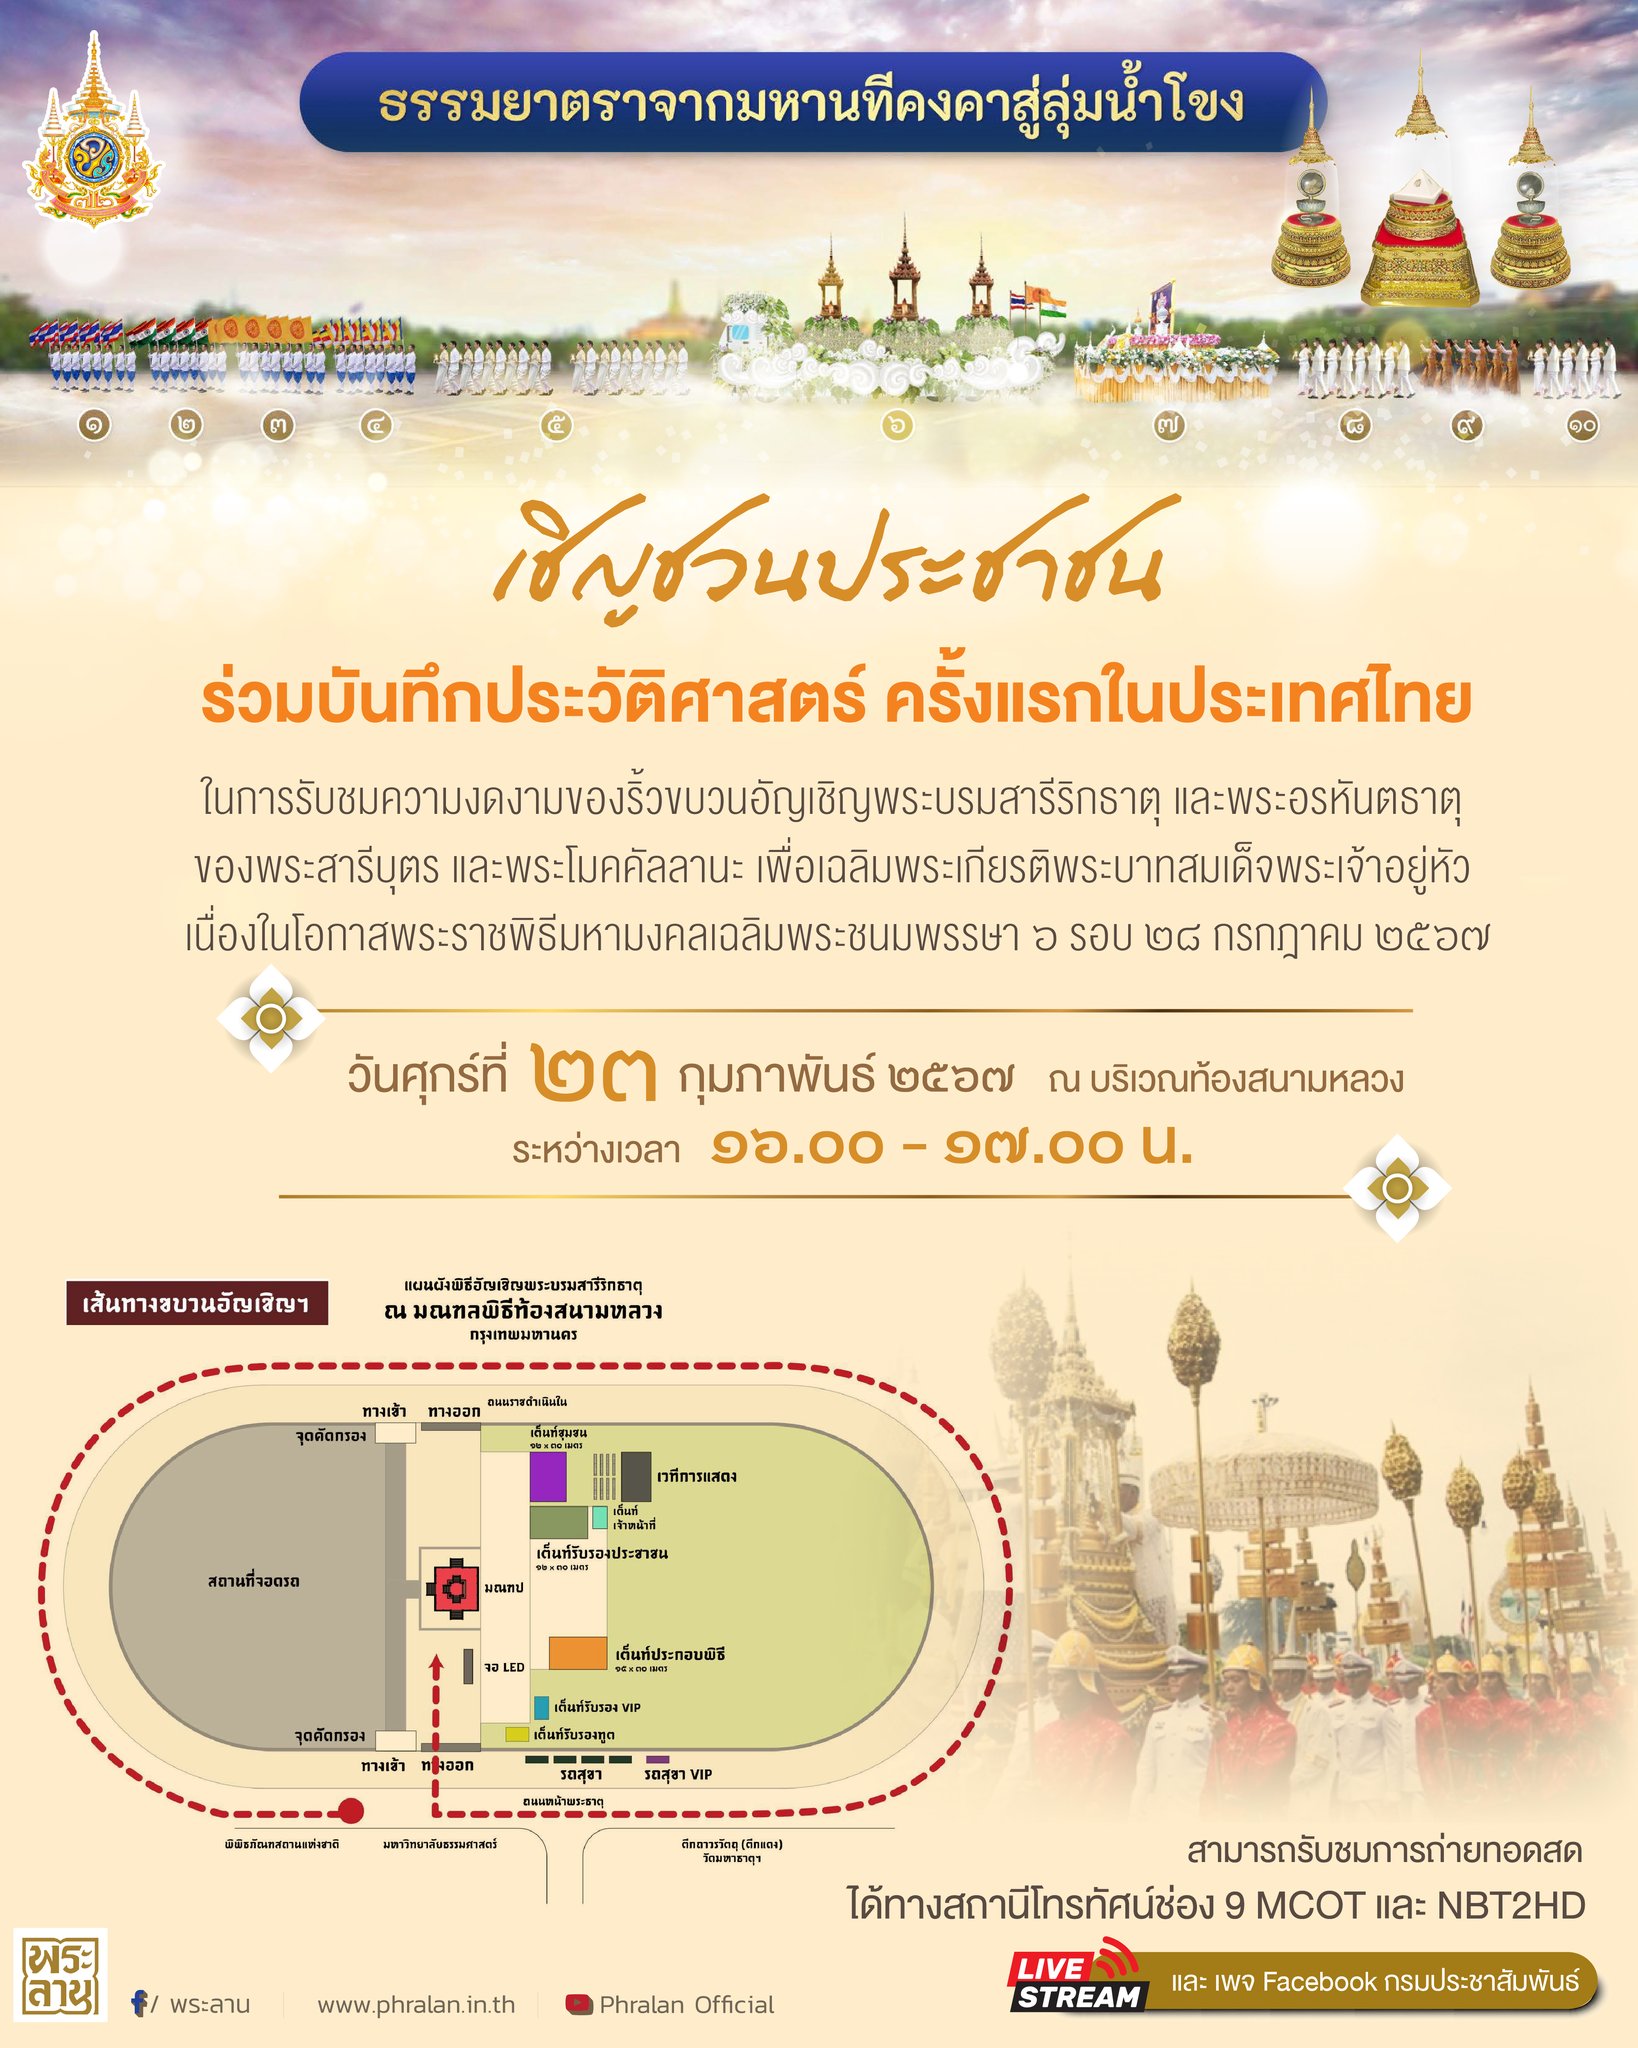 ขอเชิญชวนประชาชนร่วมบันทึกประวัติศาสตร์ ครั้งแรกในประเทศไทย 